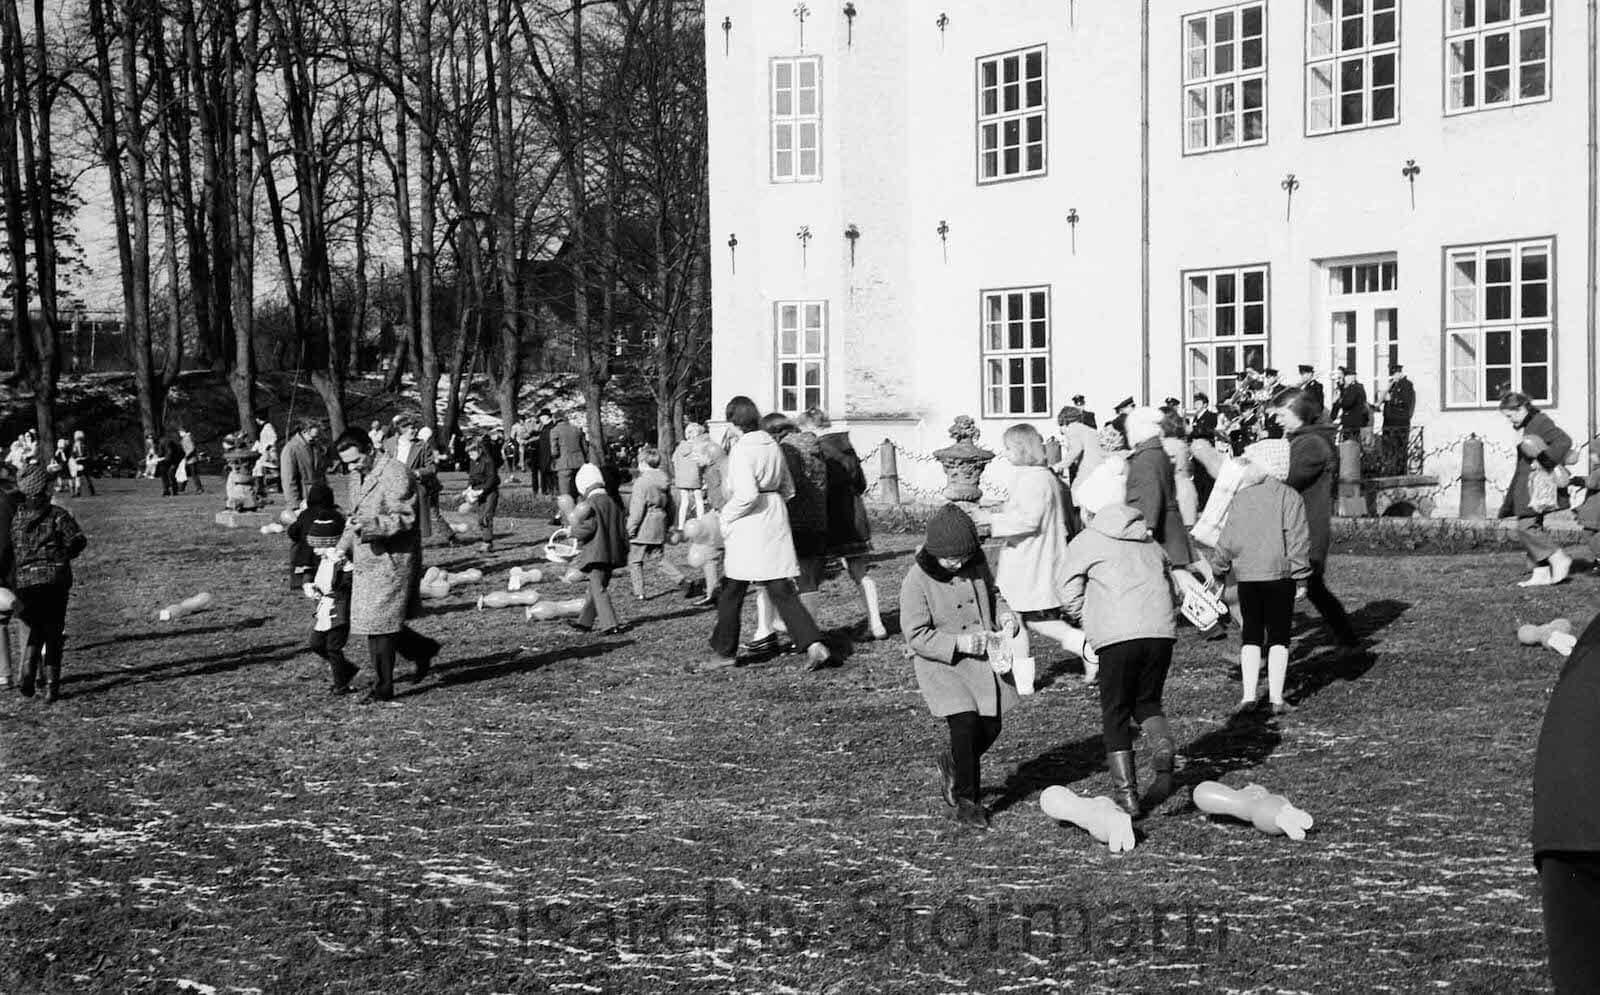 Ostereier suchen im Schlosspark – Tradition seit 1948